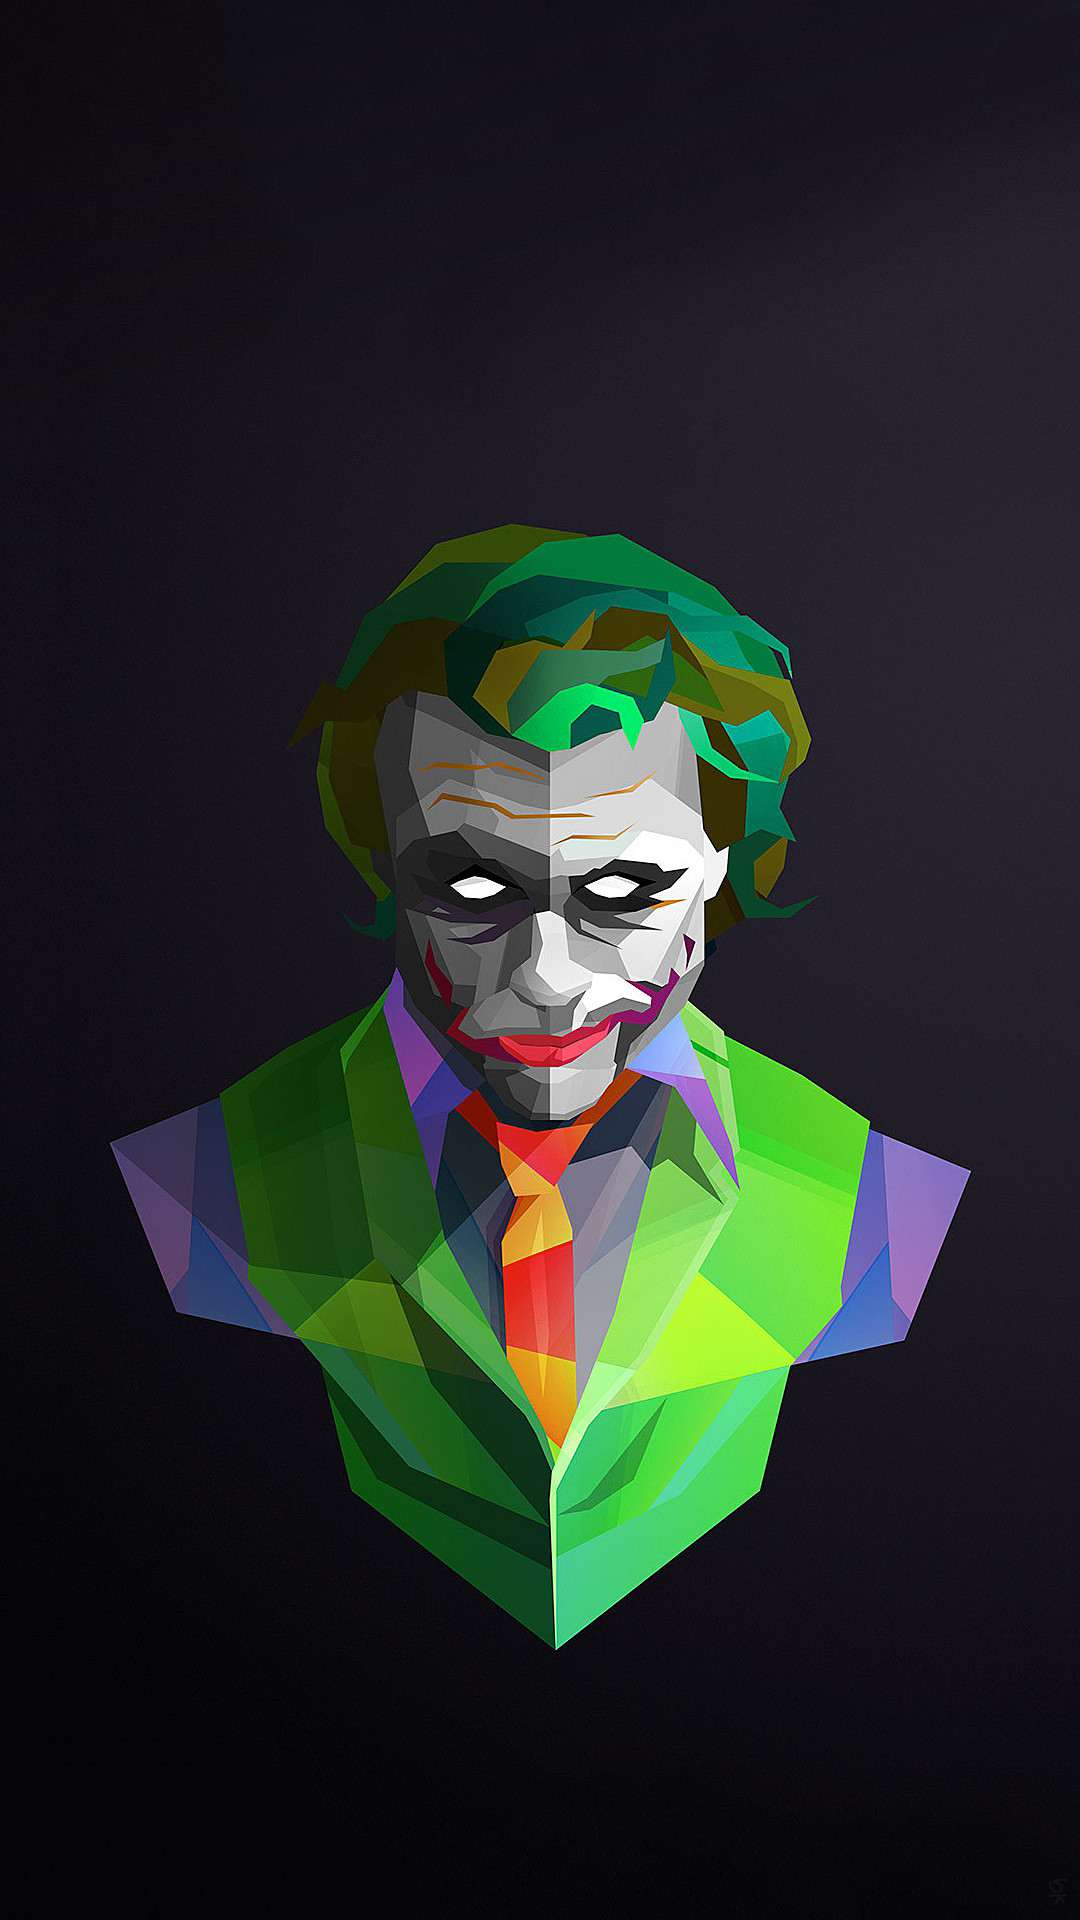 1080x1920 wallpaper Joker Iphone Wallpaper, Batman Joker Wallpaper, Heath Ledger  Joker Wallpaper, Joker Ledger